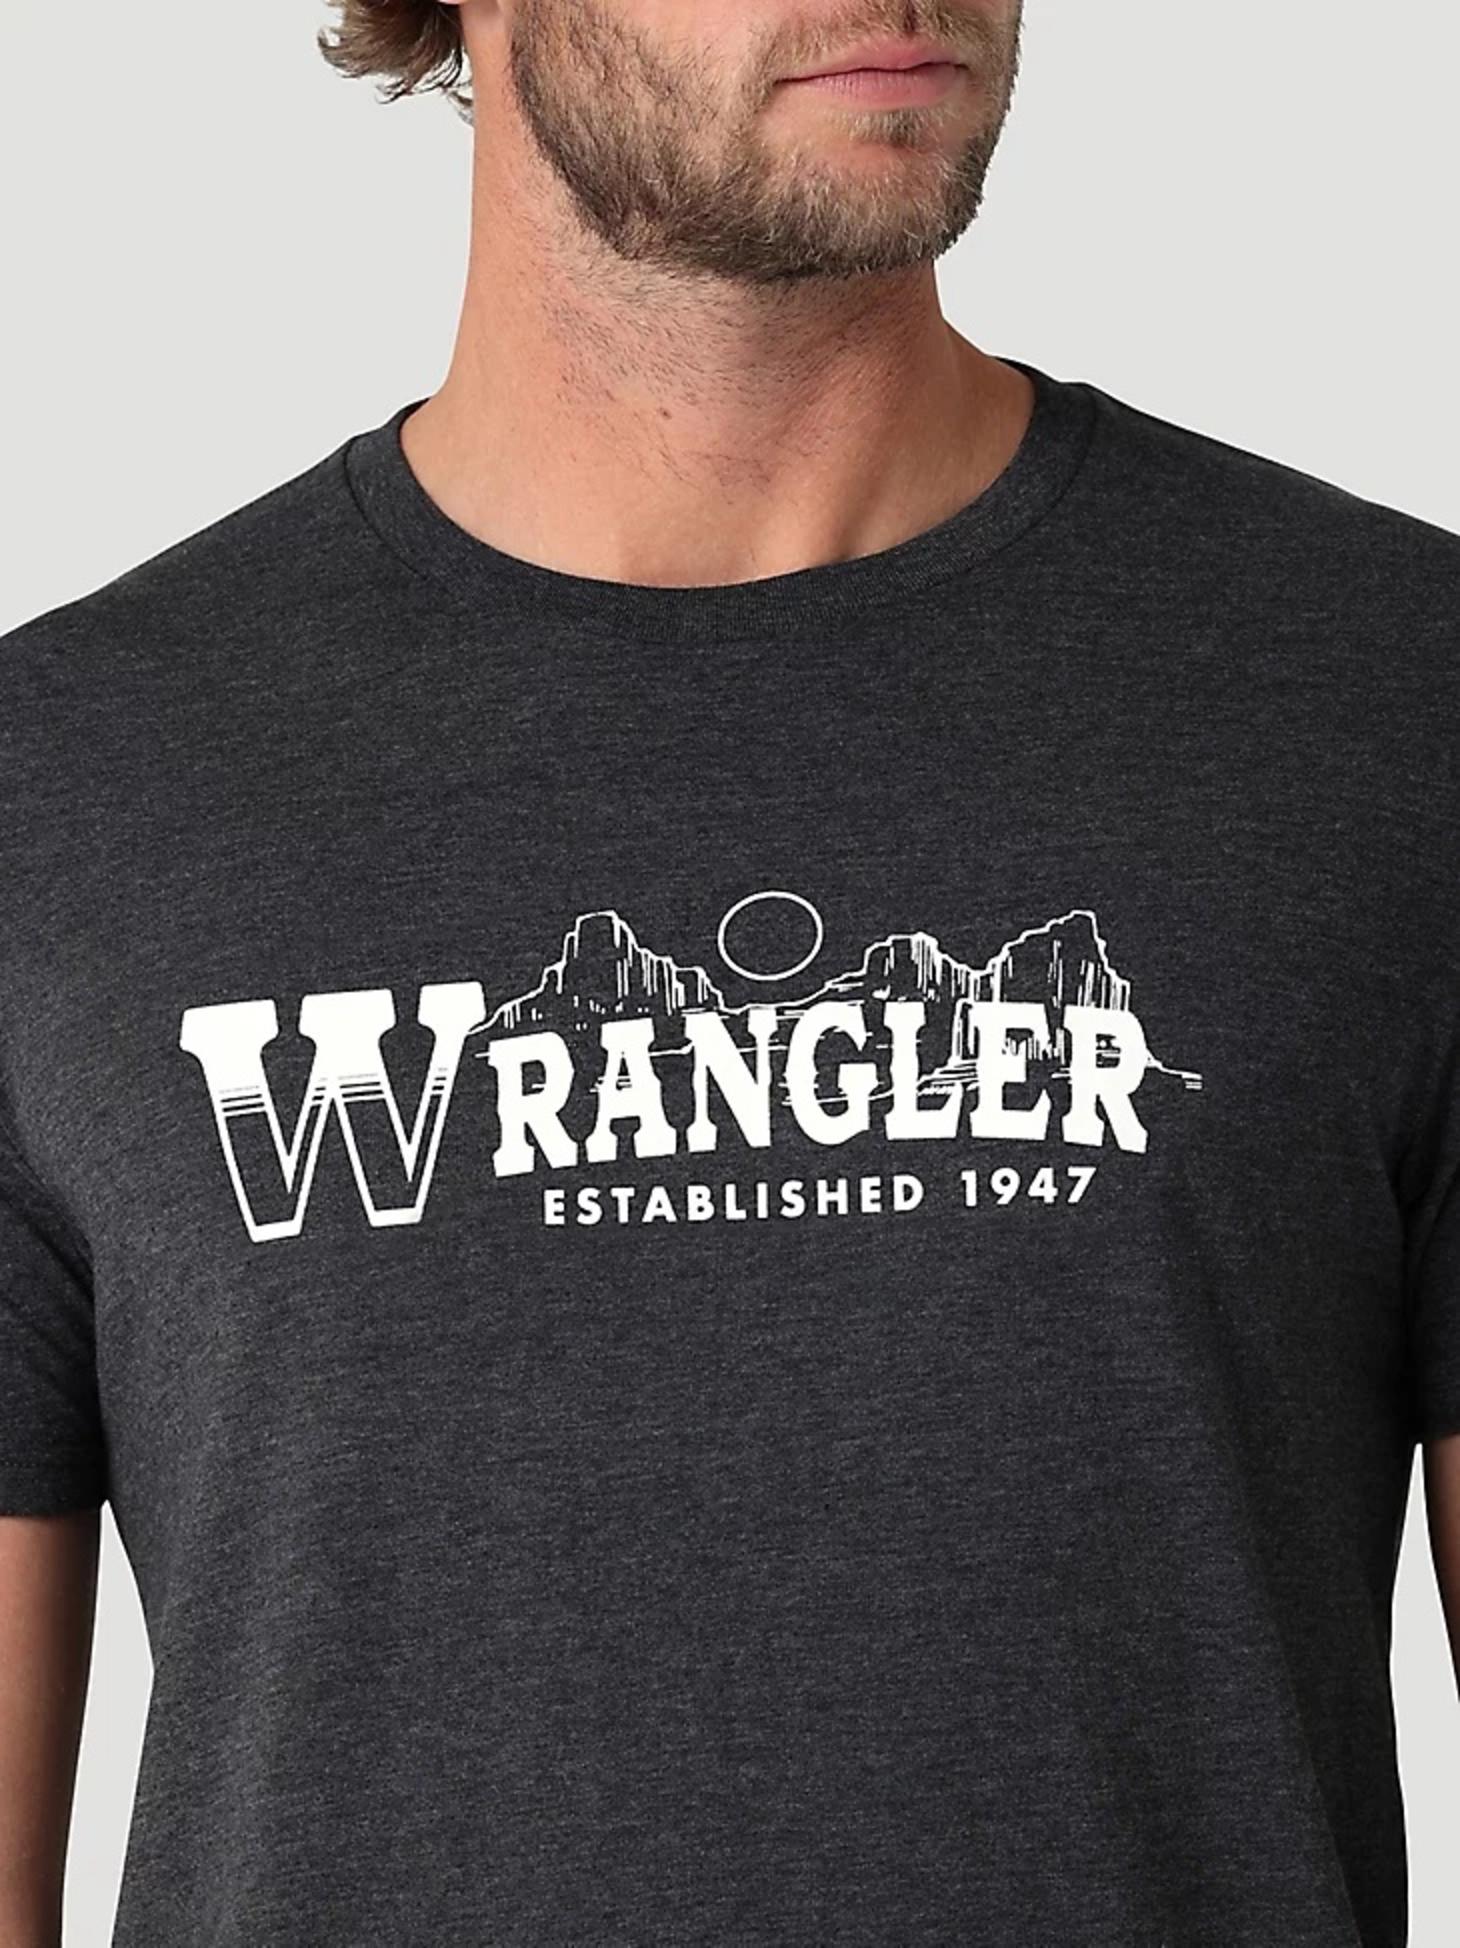 Wrangler® Men’s West Logo T-Shirt 